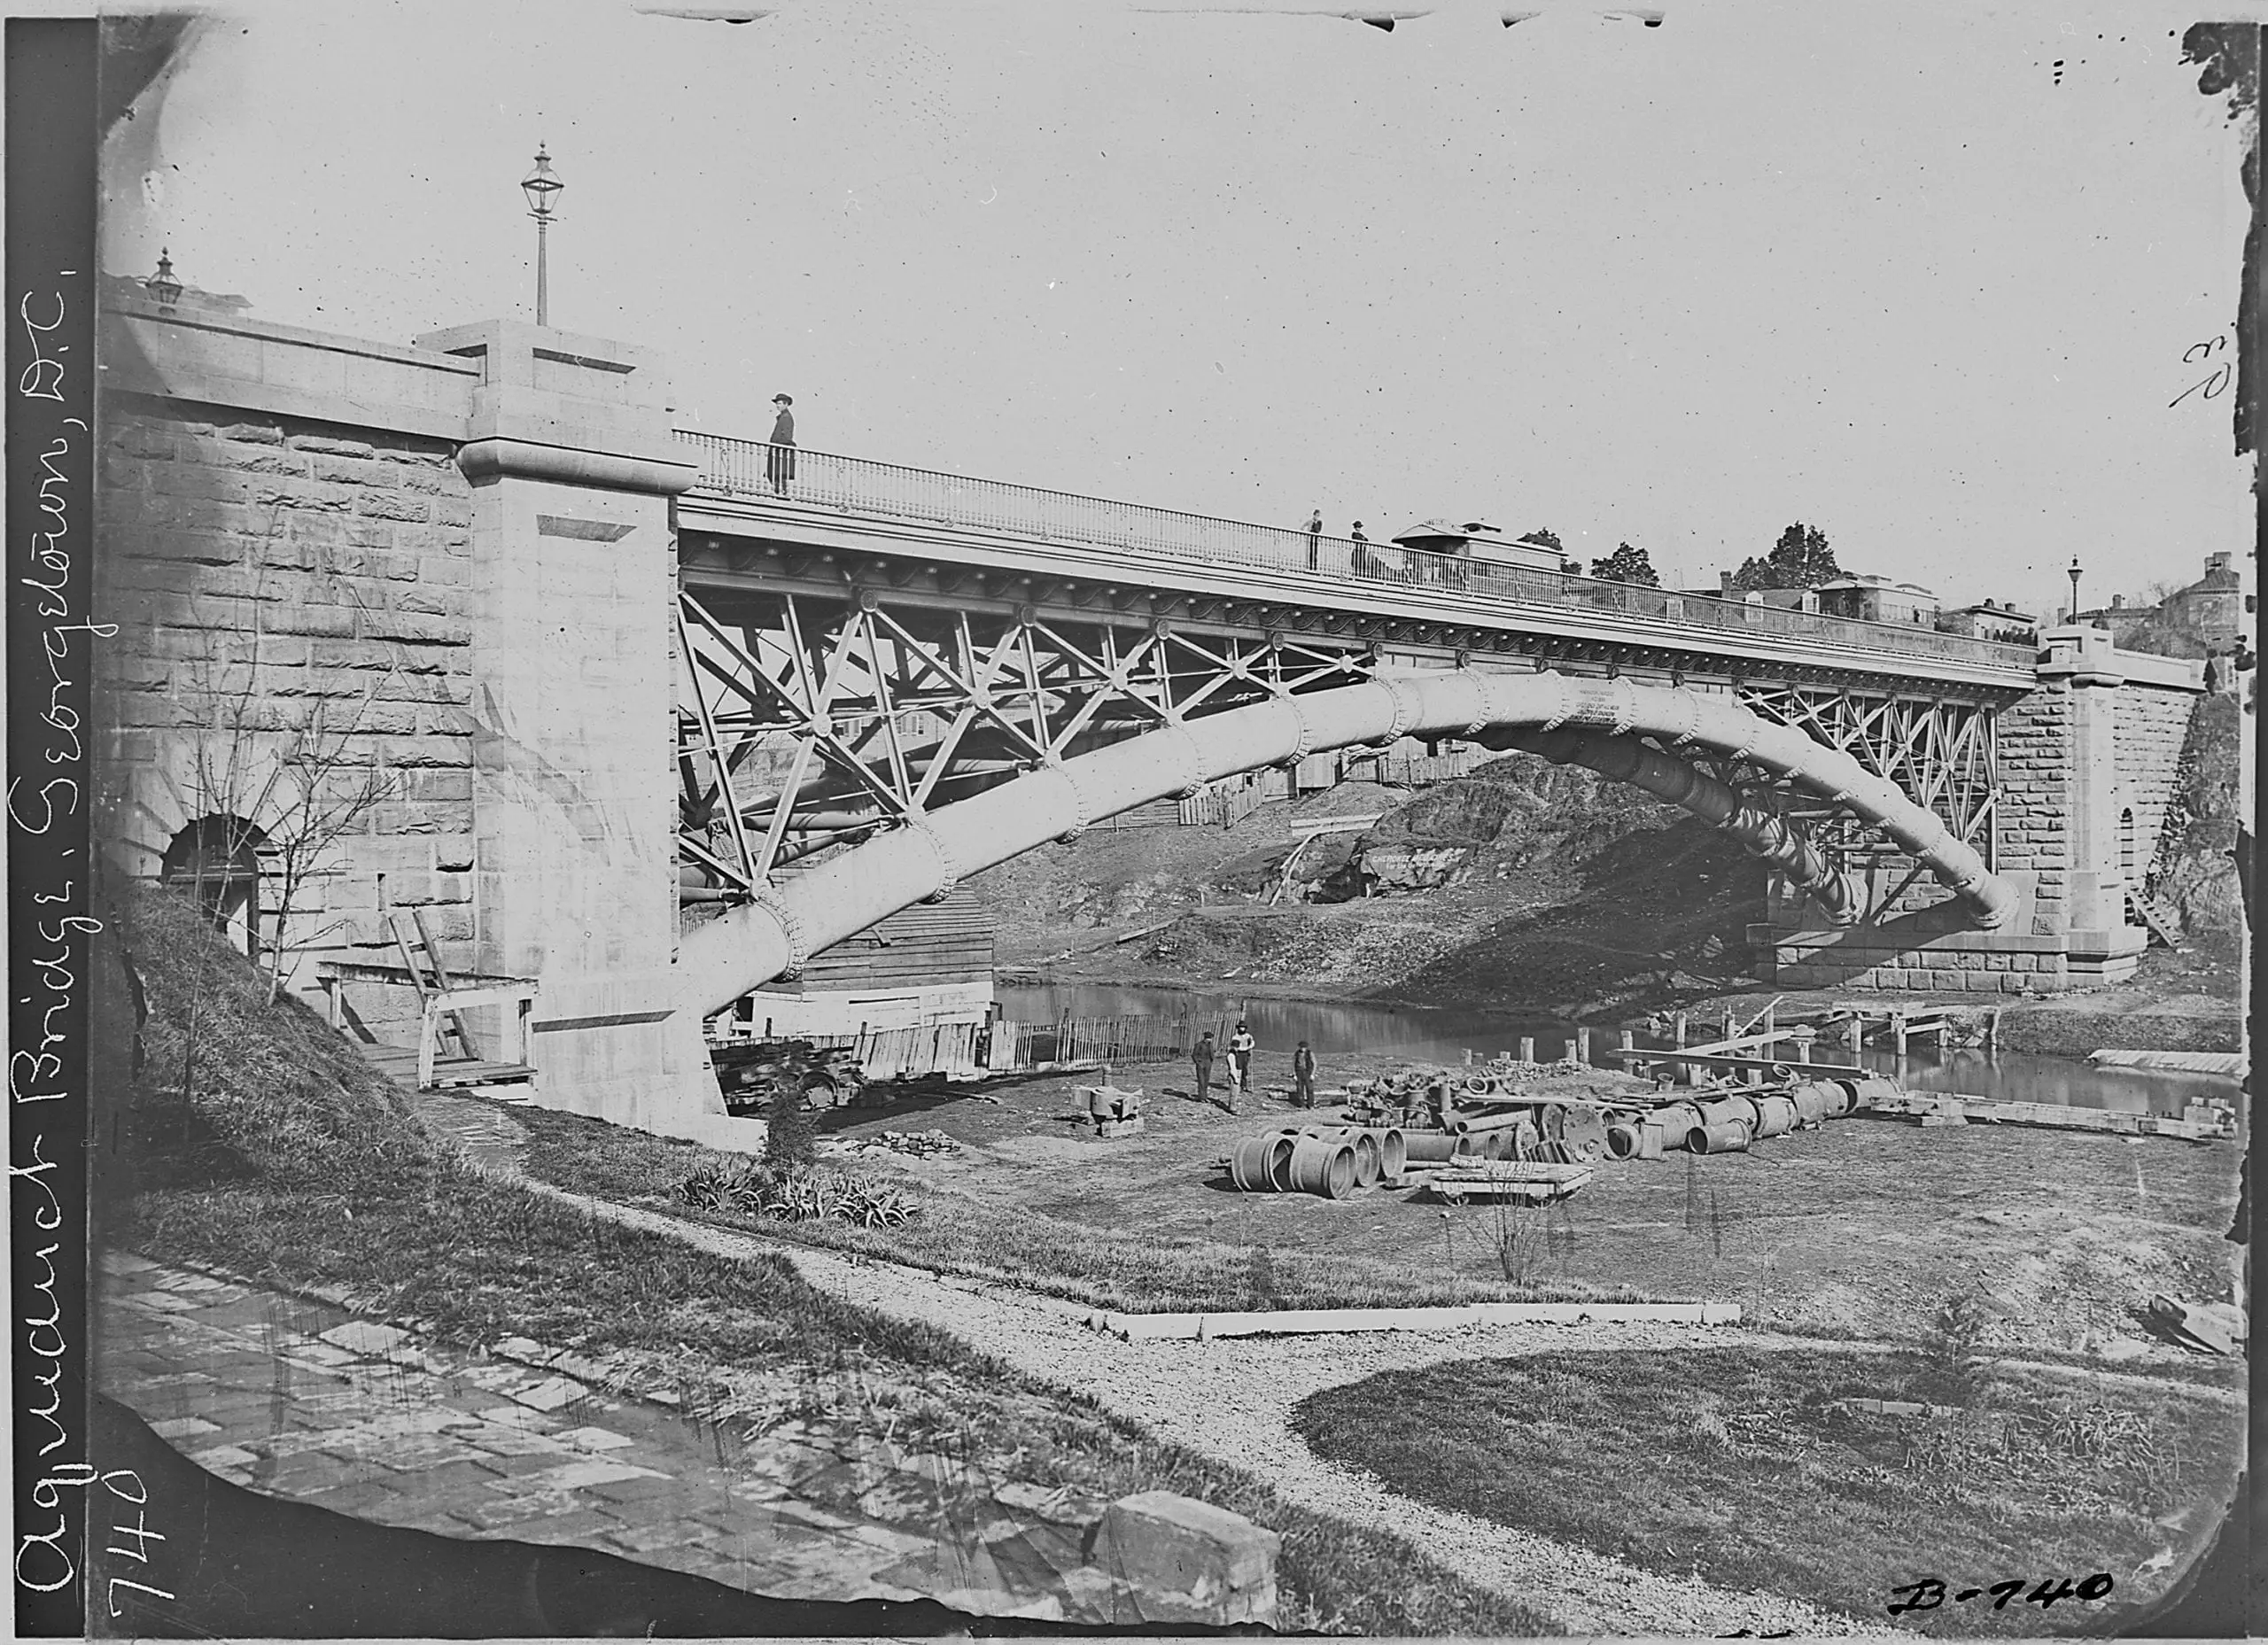 Aqueduct Bridge in the 1860s